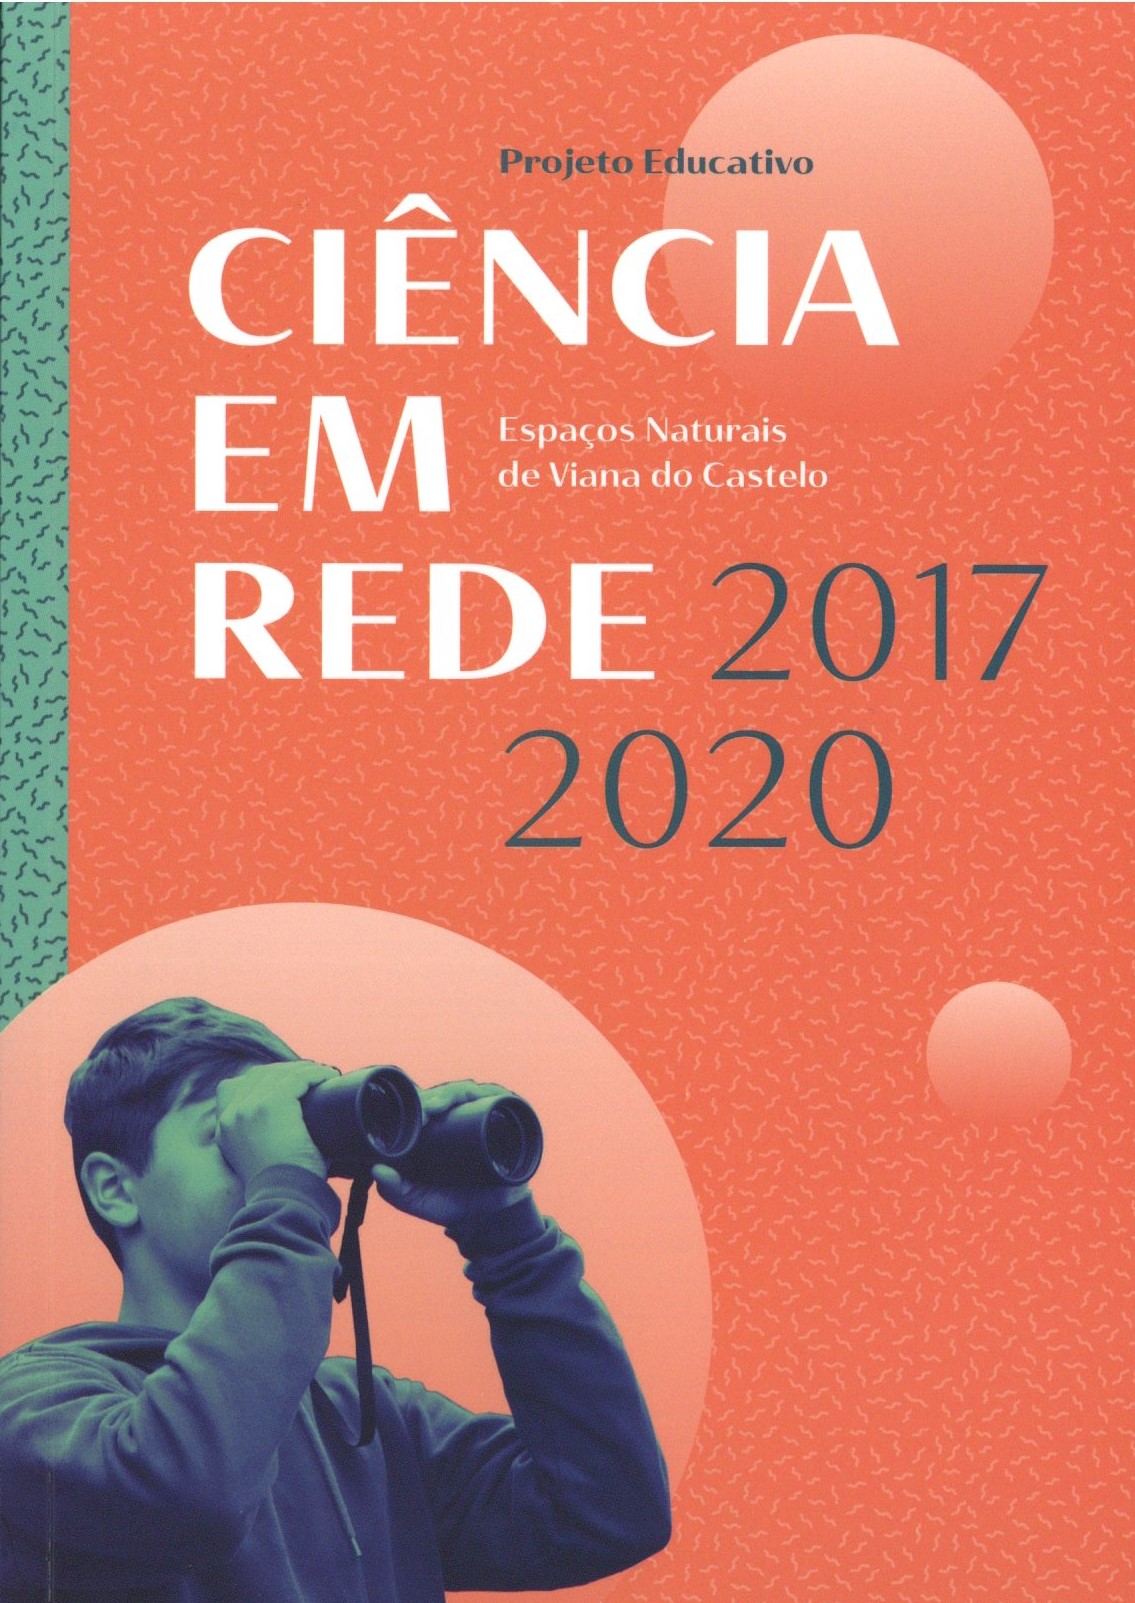 Ciência em rede – espaços naturais de Viana do Castelo. Projeto educativo 2017-2020